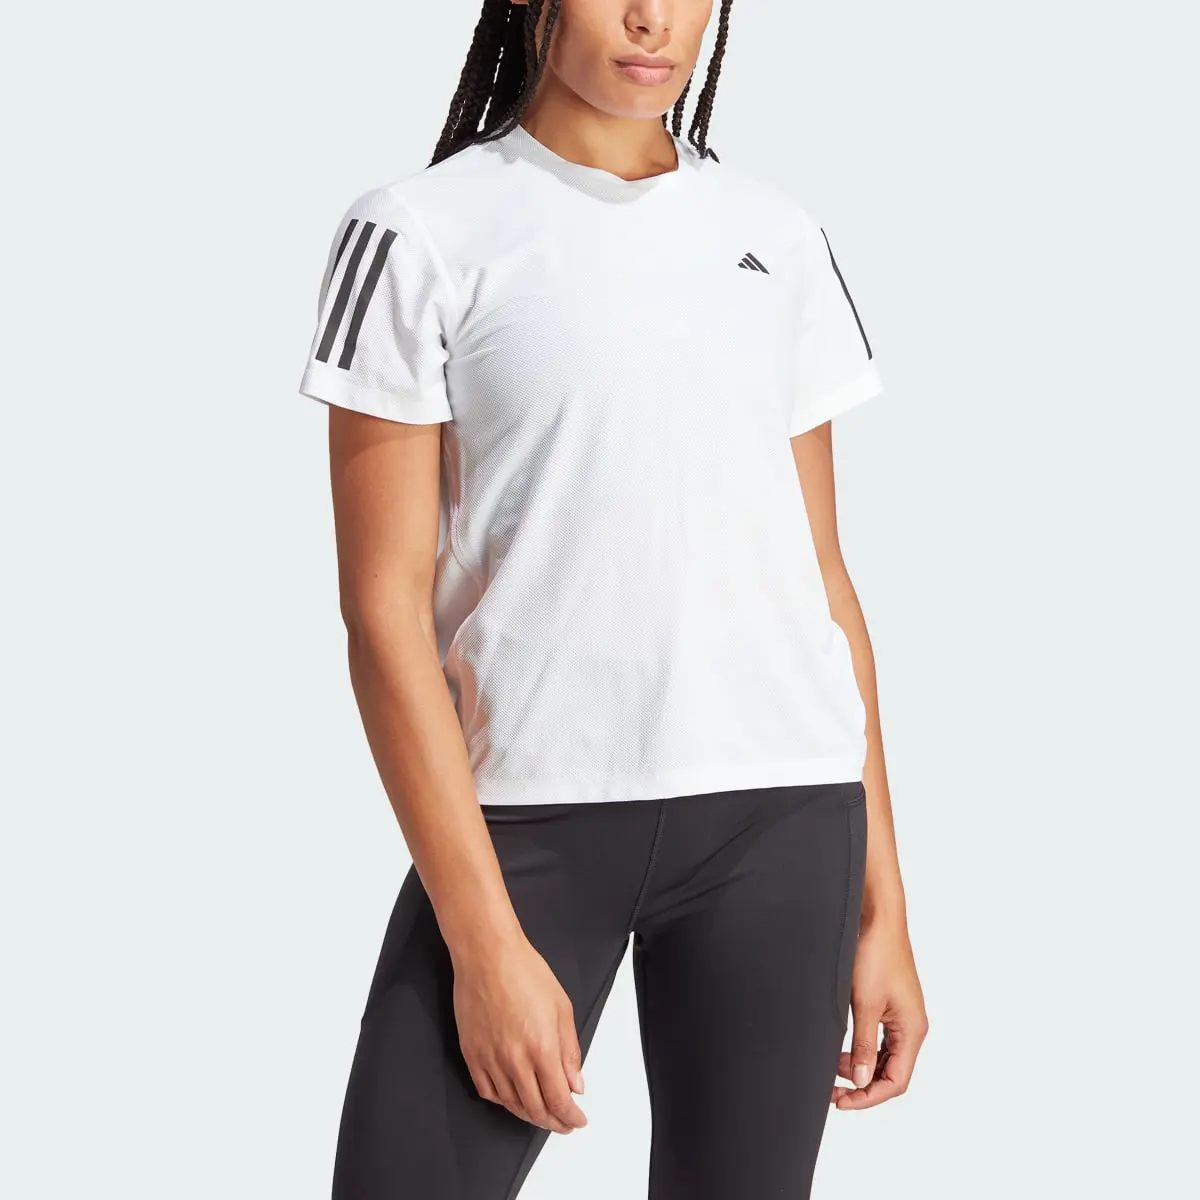 Adidas Own The Run T-Shirt. 1